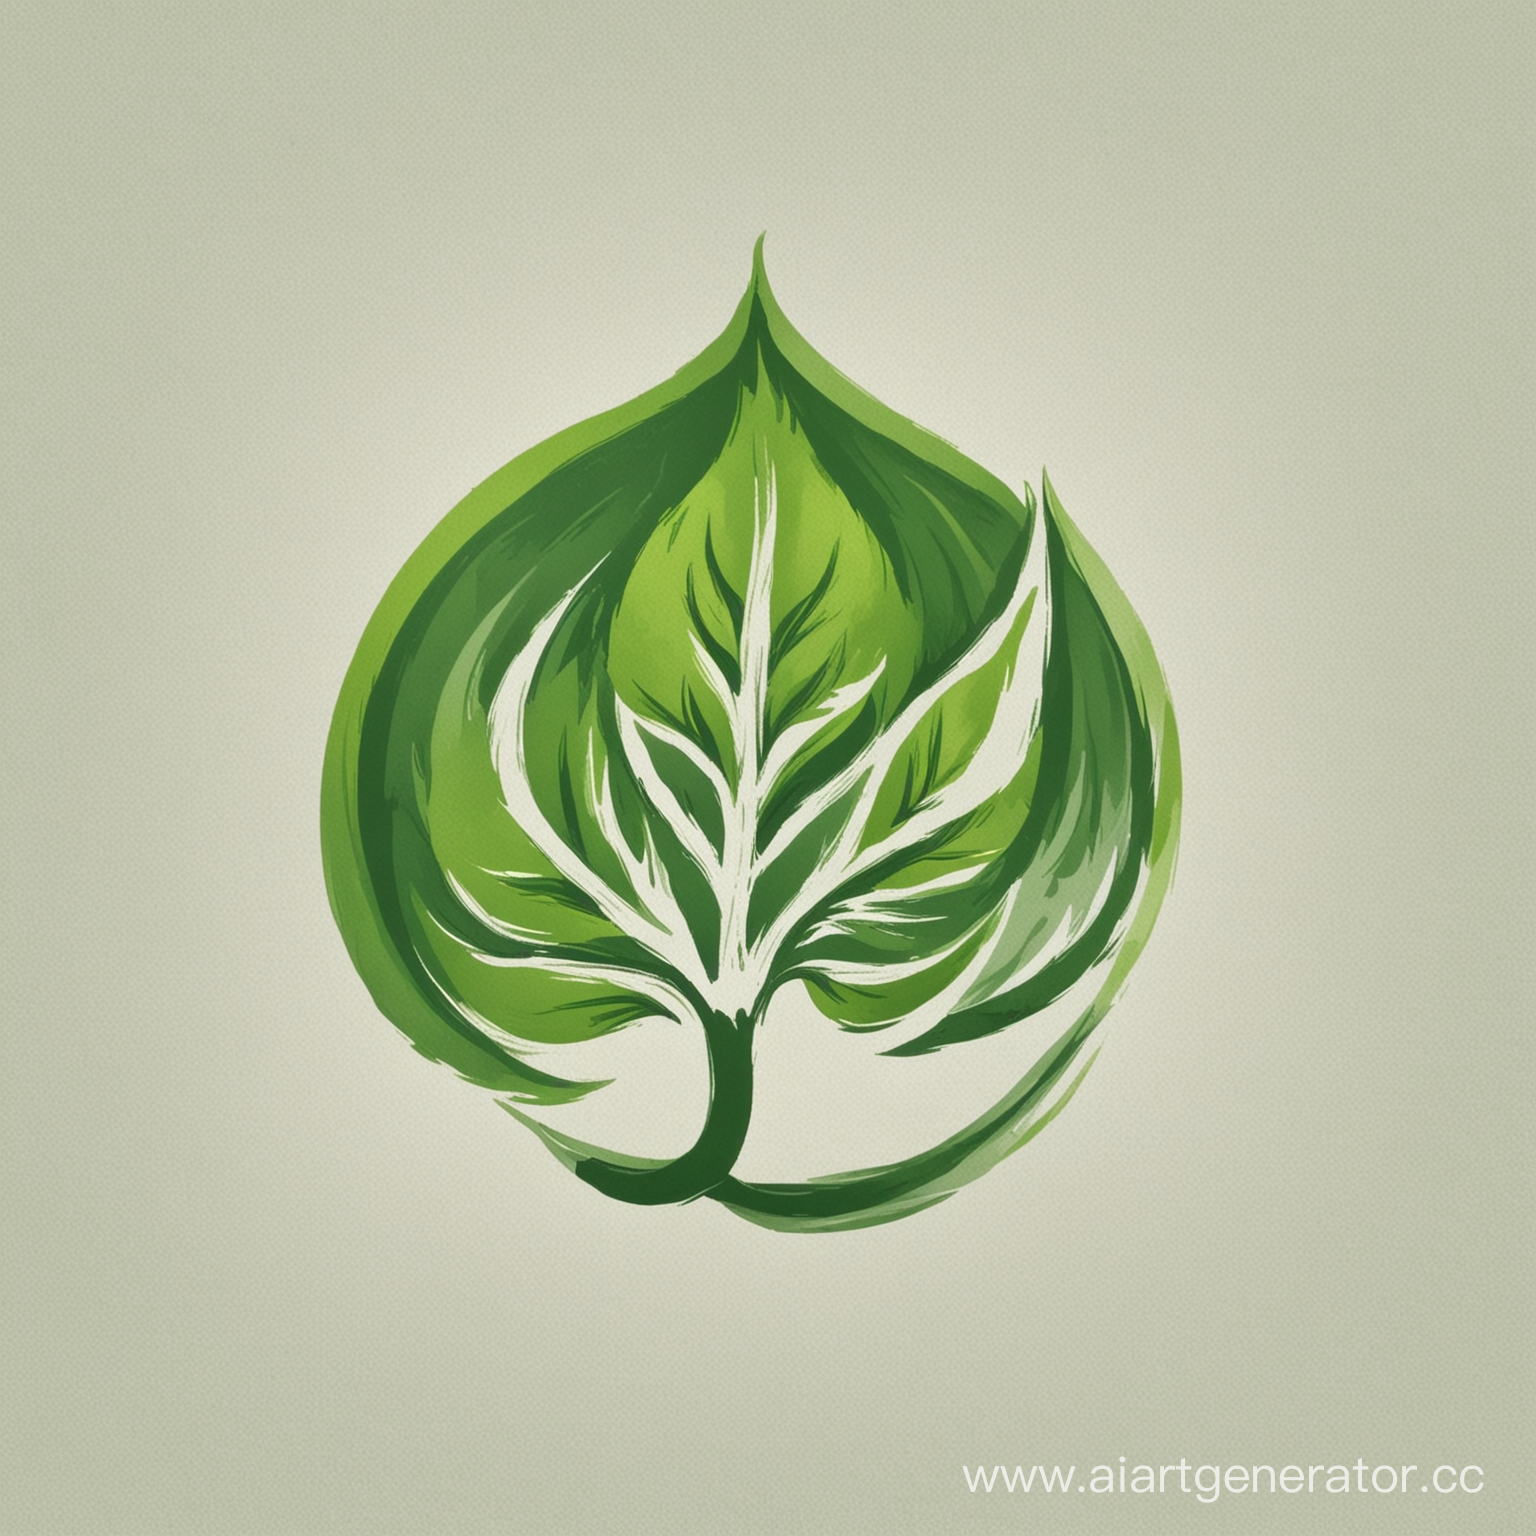 логотип для озеленительной компании, В центре зелененый листок, Зеленые и белый цвета, нет надписей на рисунке